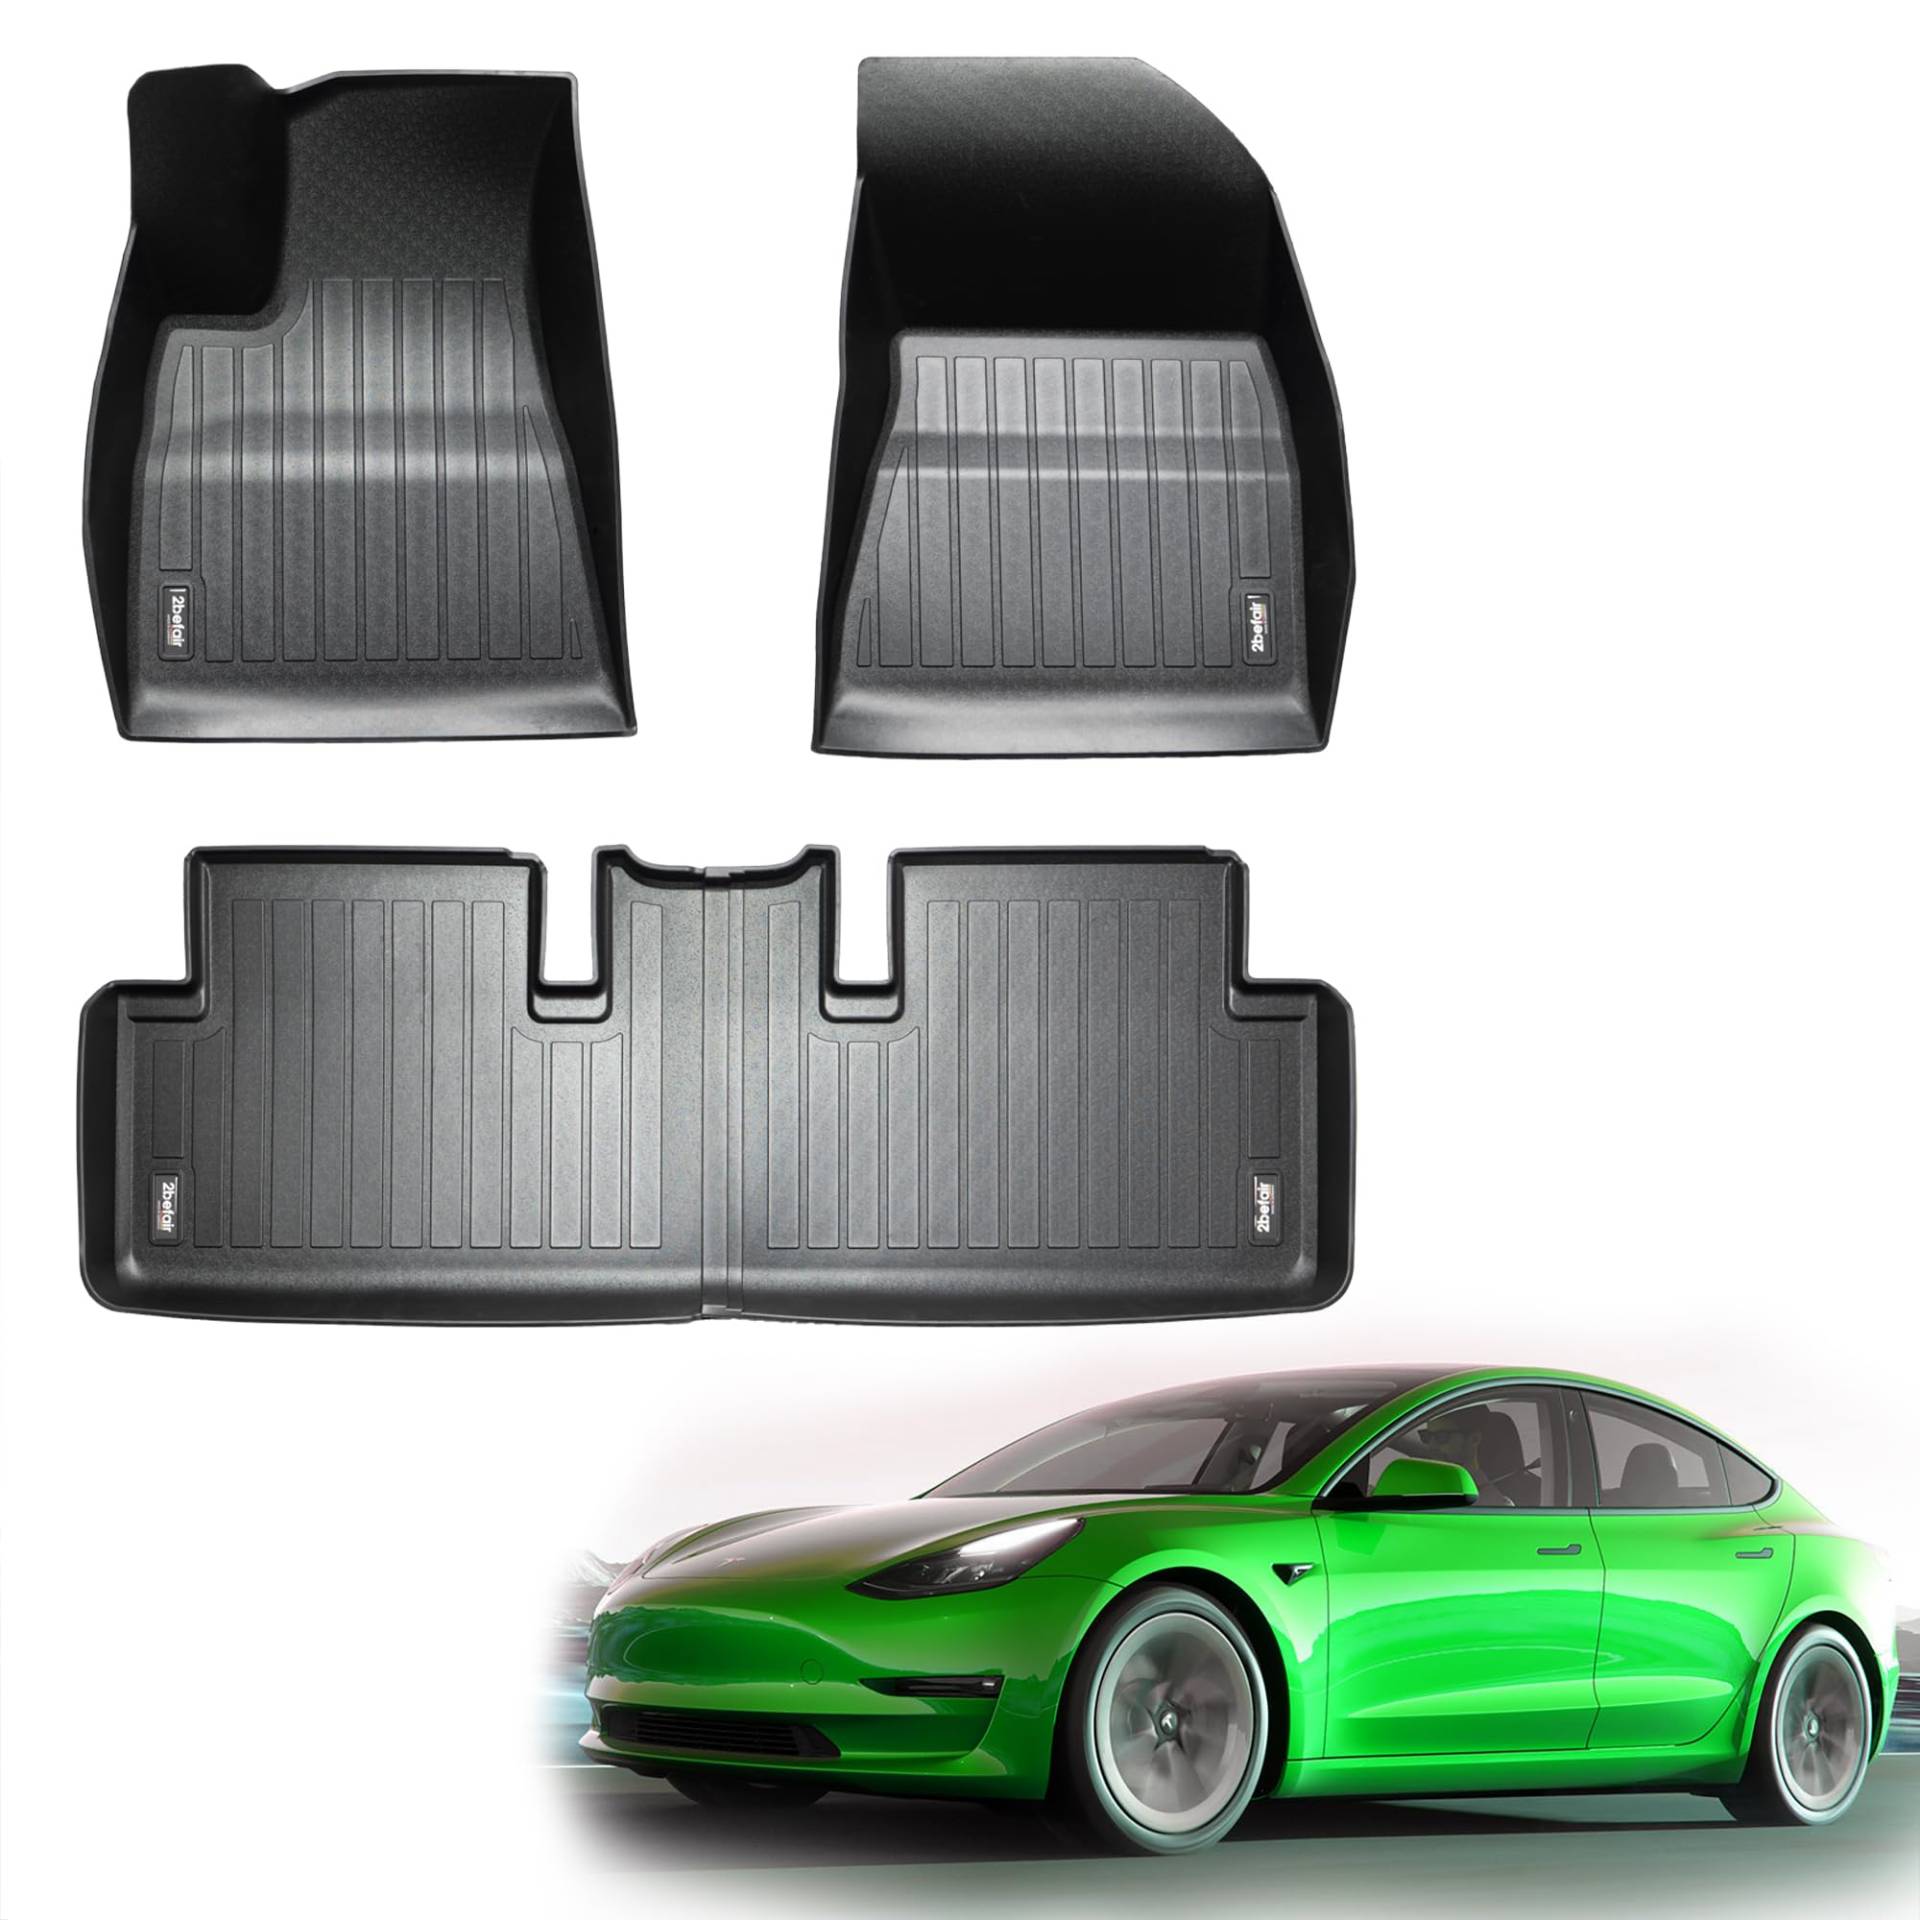 2befair Gummimatten Innenraum Tesla Model 3 (alle Modelle) – Made in Germany, rutschfeste Fußmatten für die Sitze vorne & hinten, Allwetter-Automatten im Set (3 Matten), nachhaltiges Zubehör von 2befair